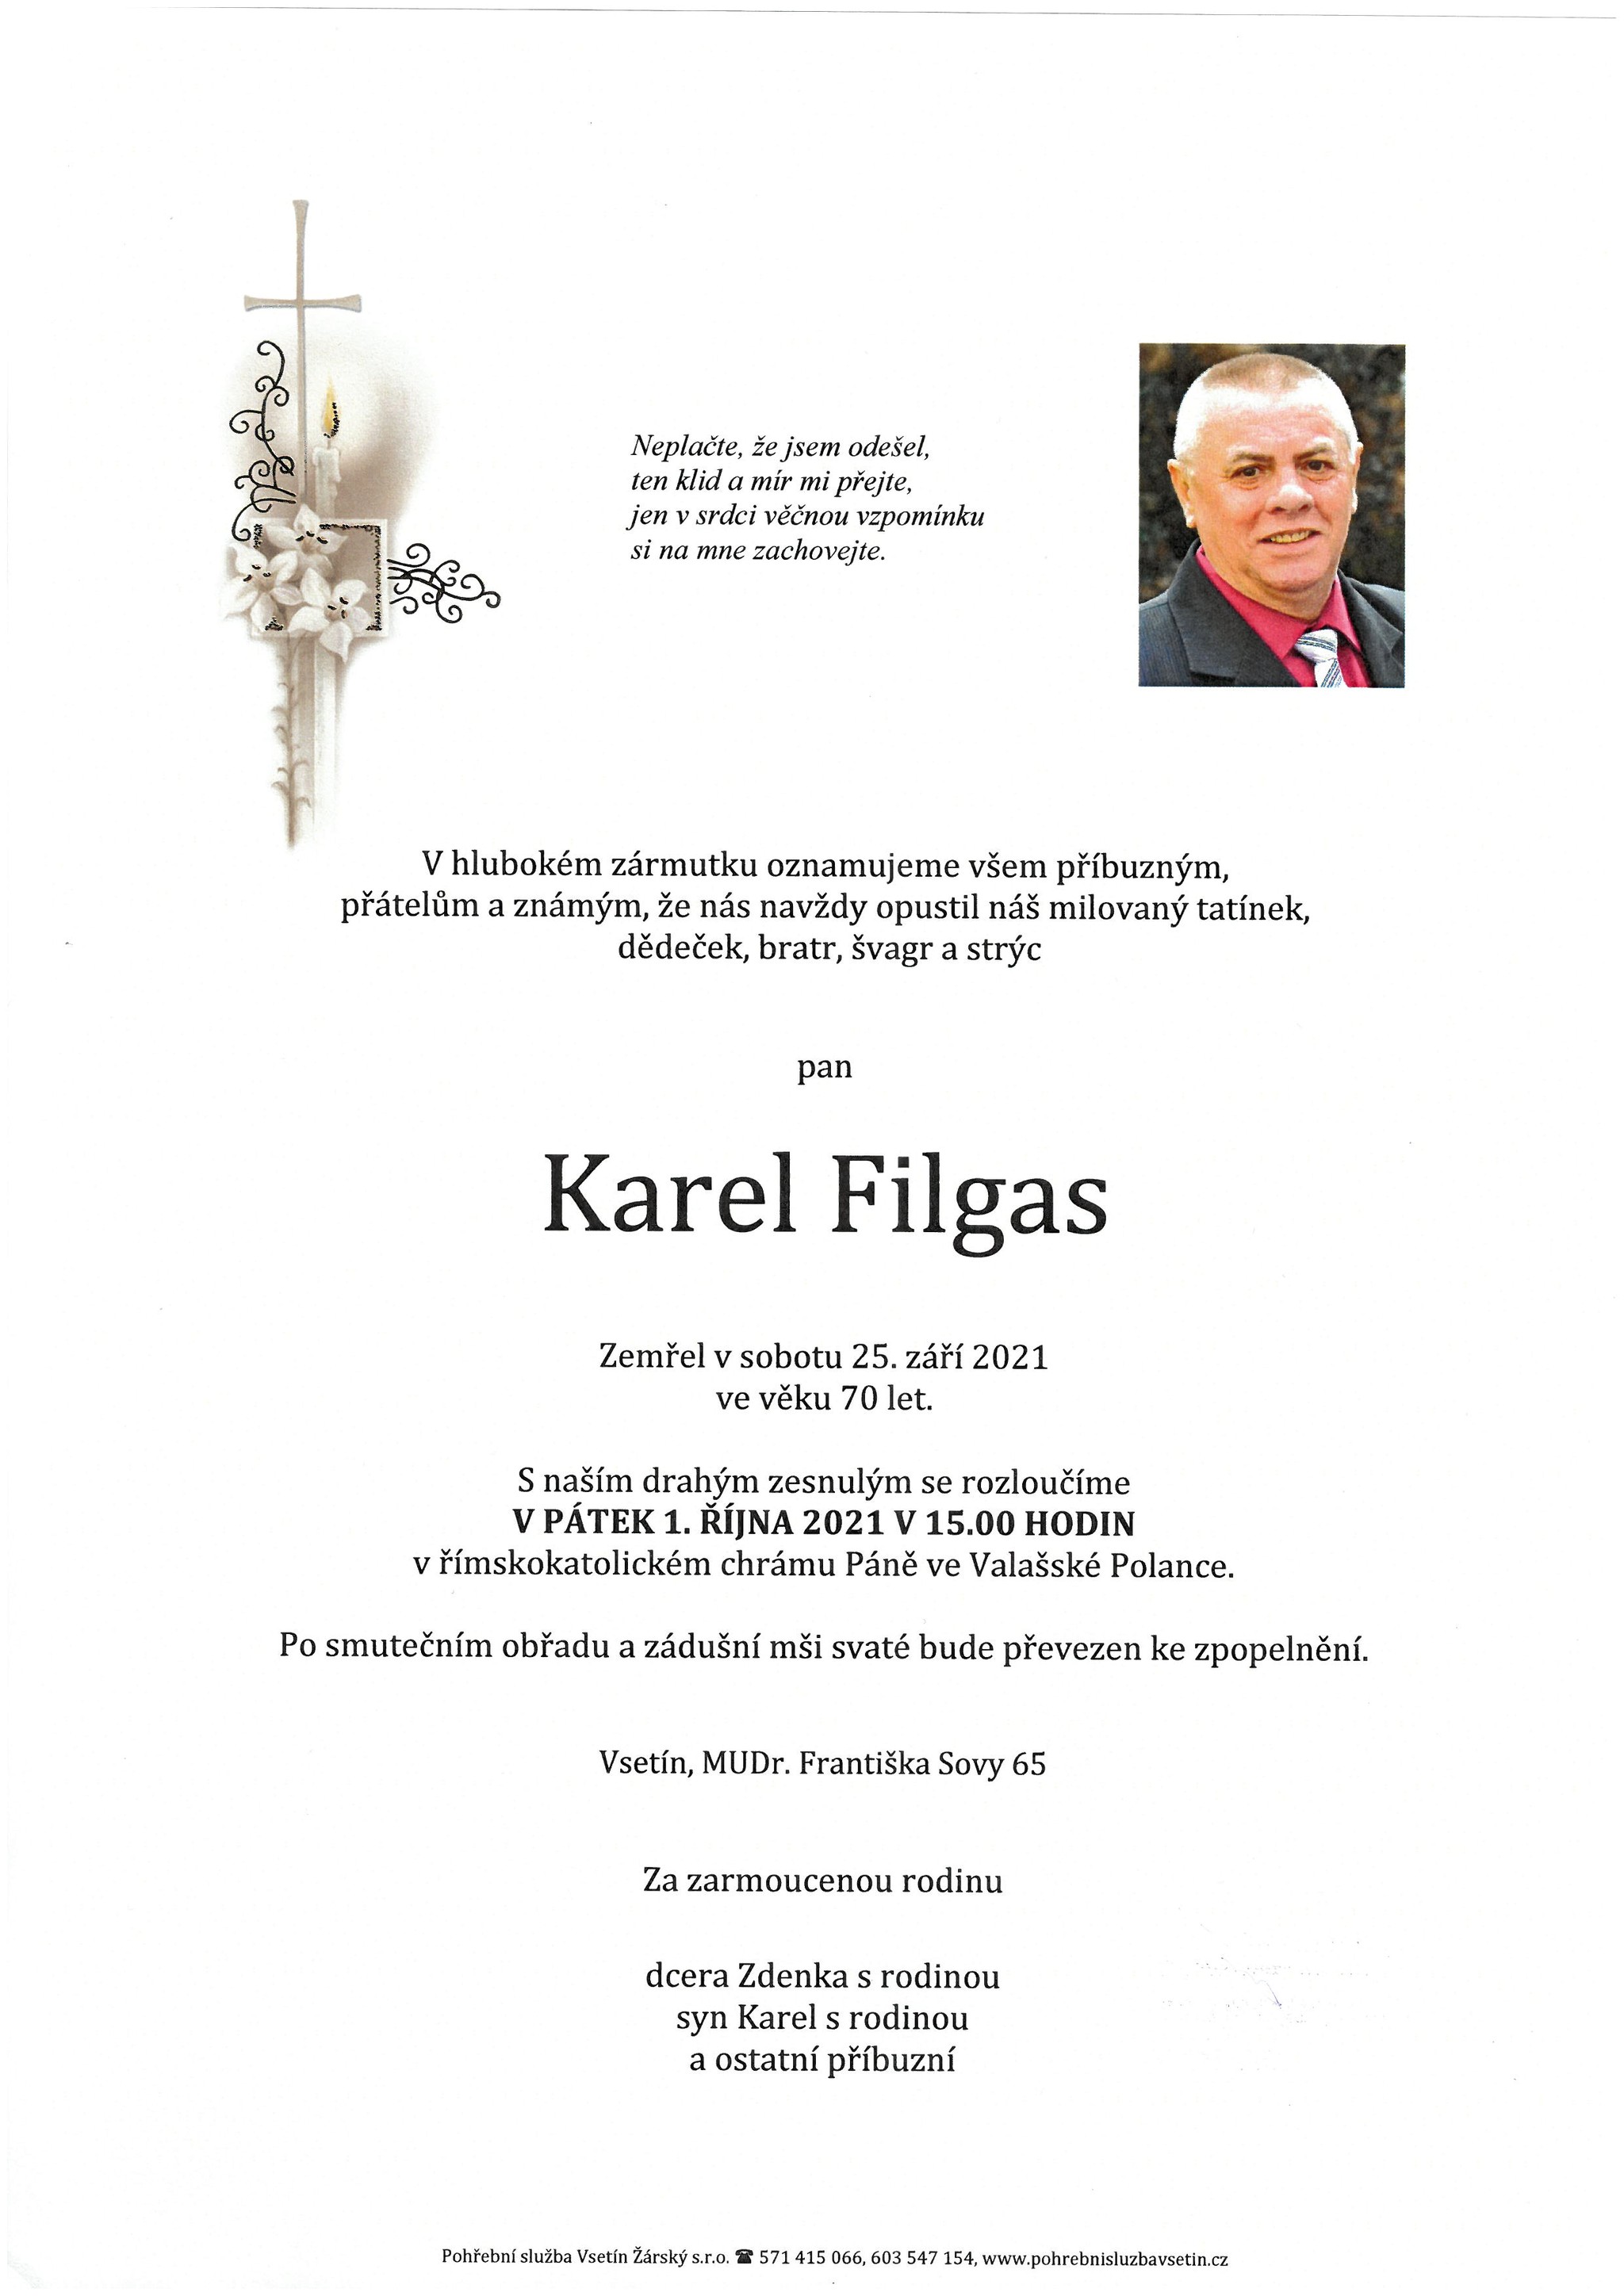 Karel Filgas